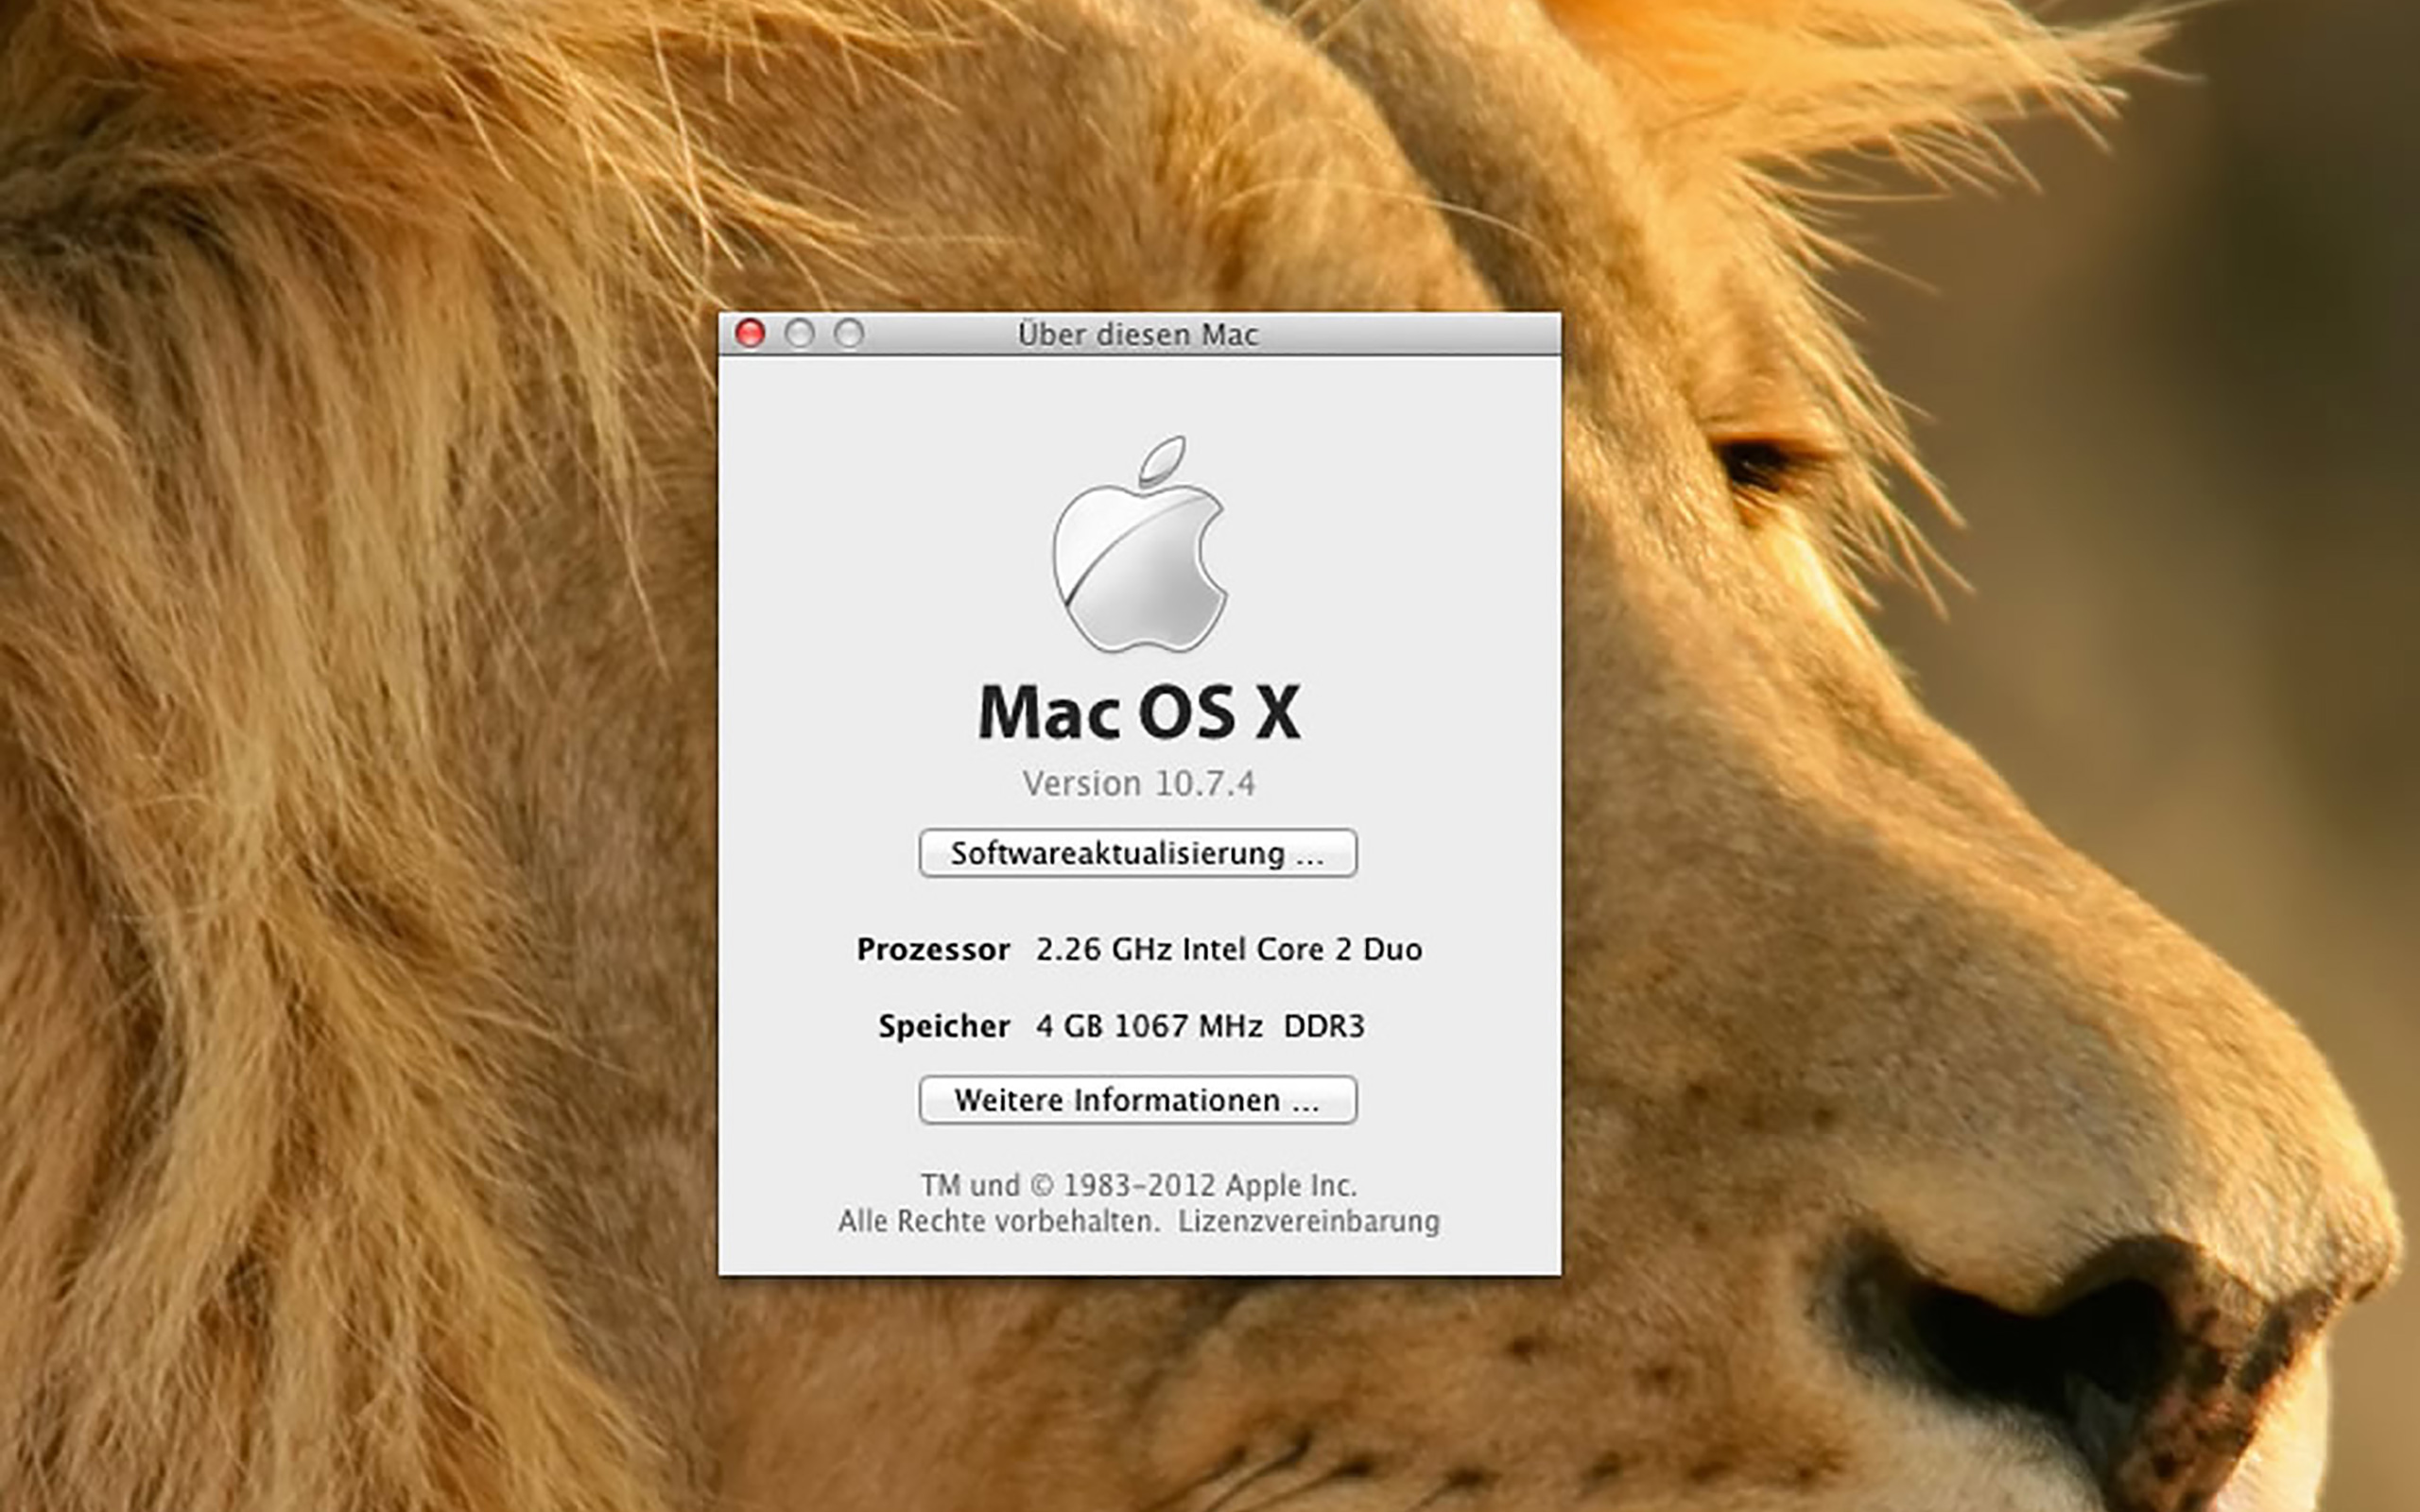 Herzlichen Glückwunsch! Dein Mac mini freut sich über 4GB RAM.